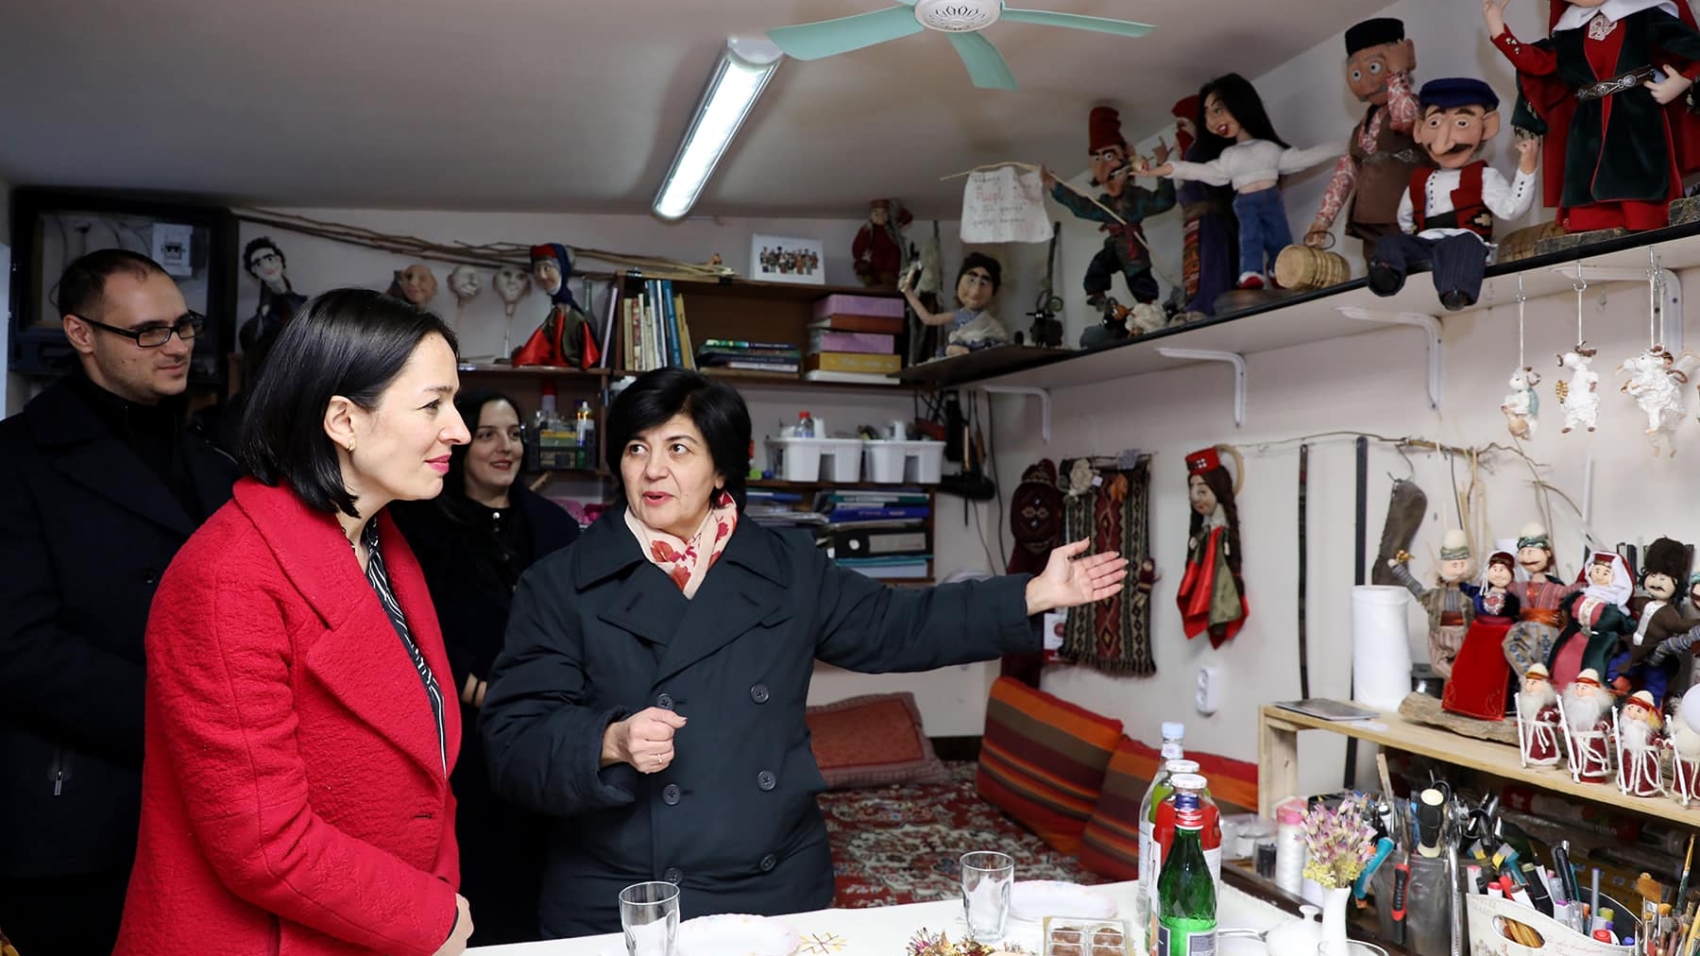 ԿԳՄՍ նախարար Ժաննա Անդրեասյանն այցելել է ժողովրդական վարպետ Ալլա Սարգսյանի արվեստանոց